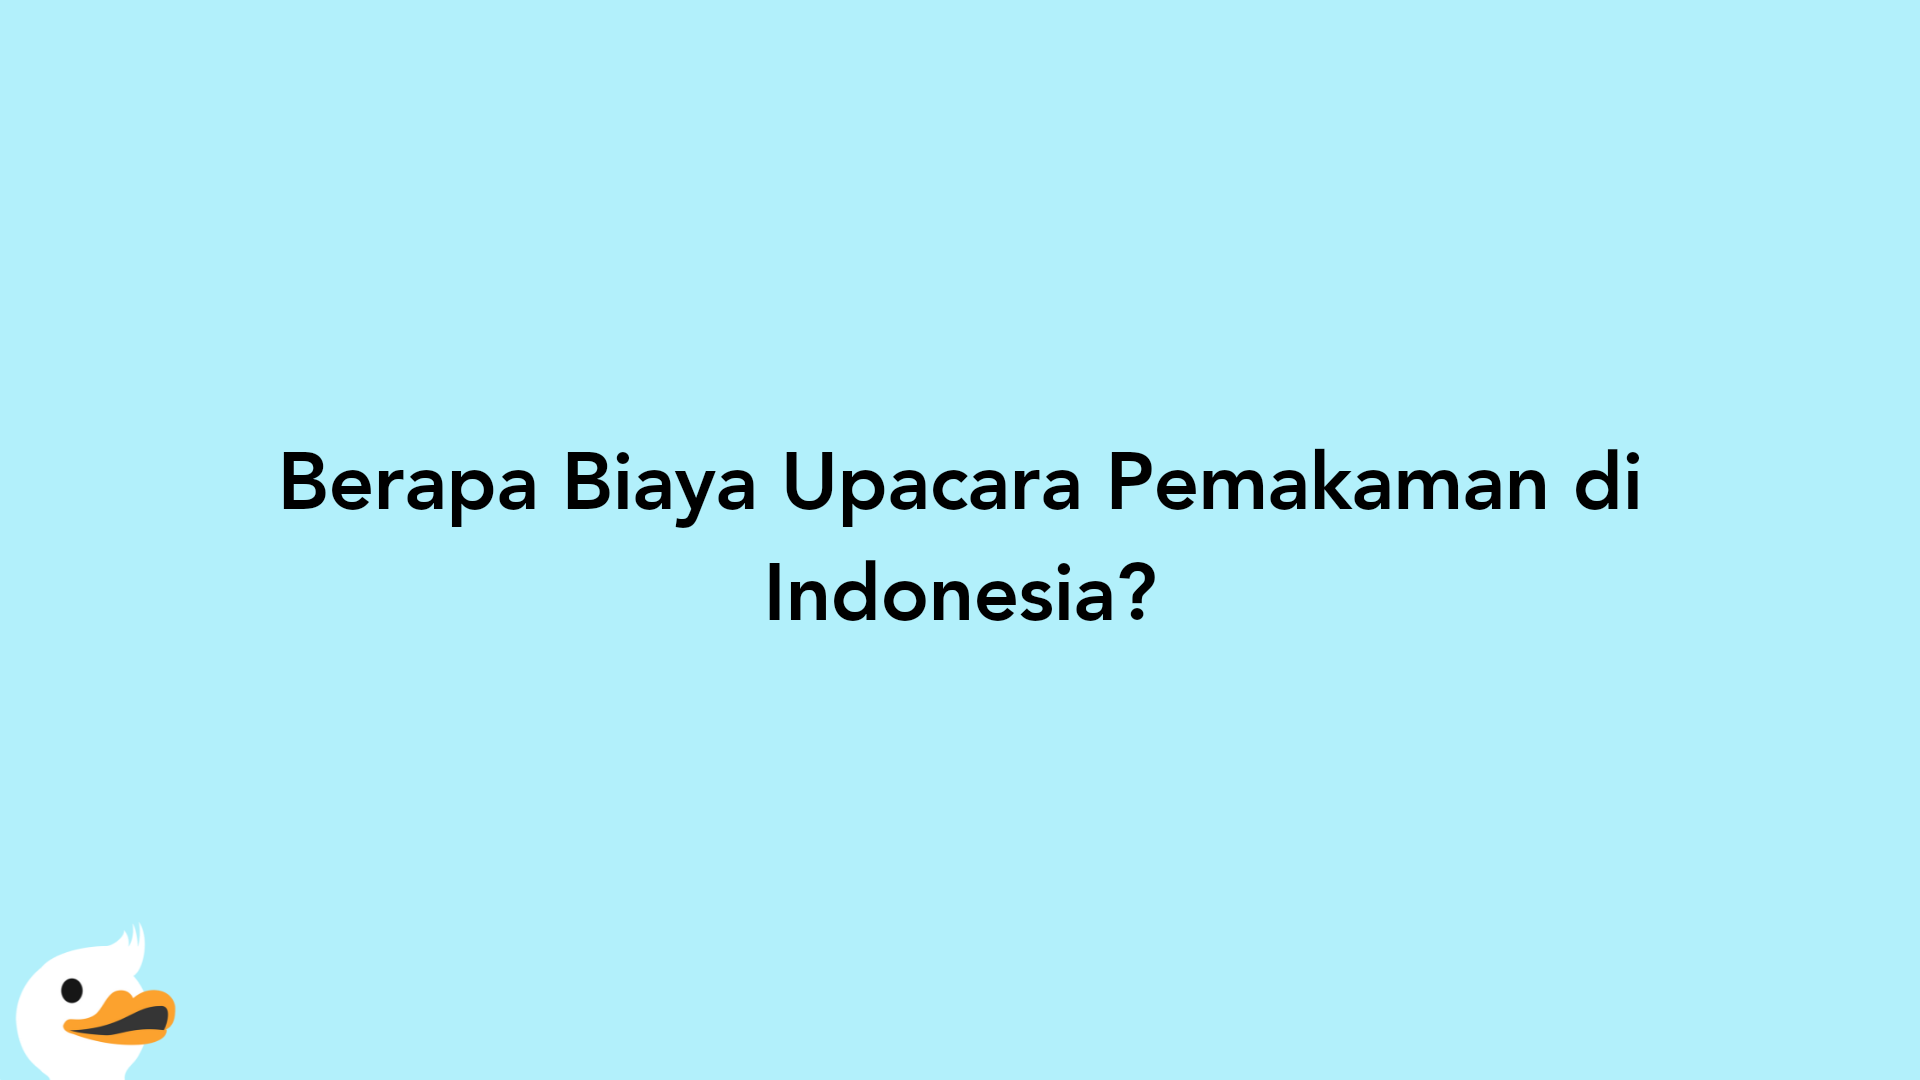 Berapa Biaya Upacara Pemakaman di Indonesia?